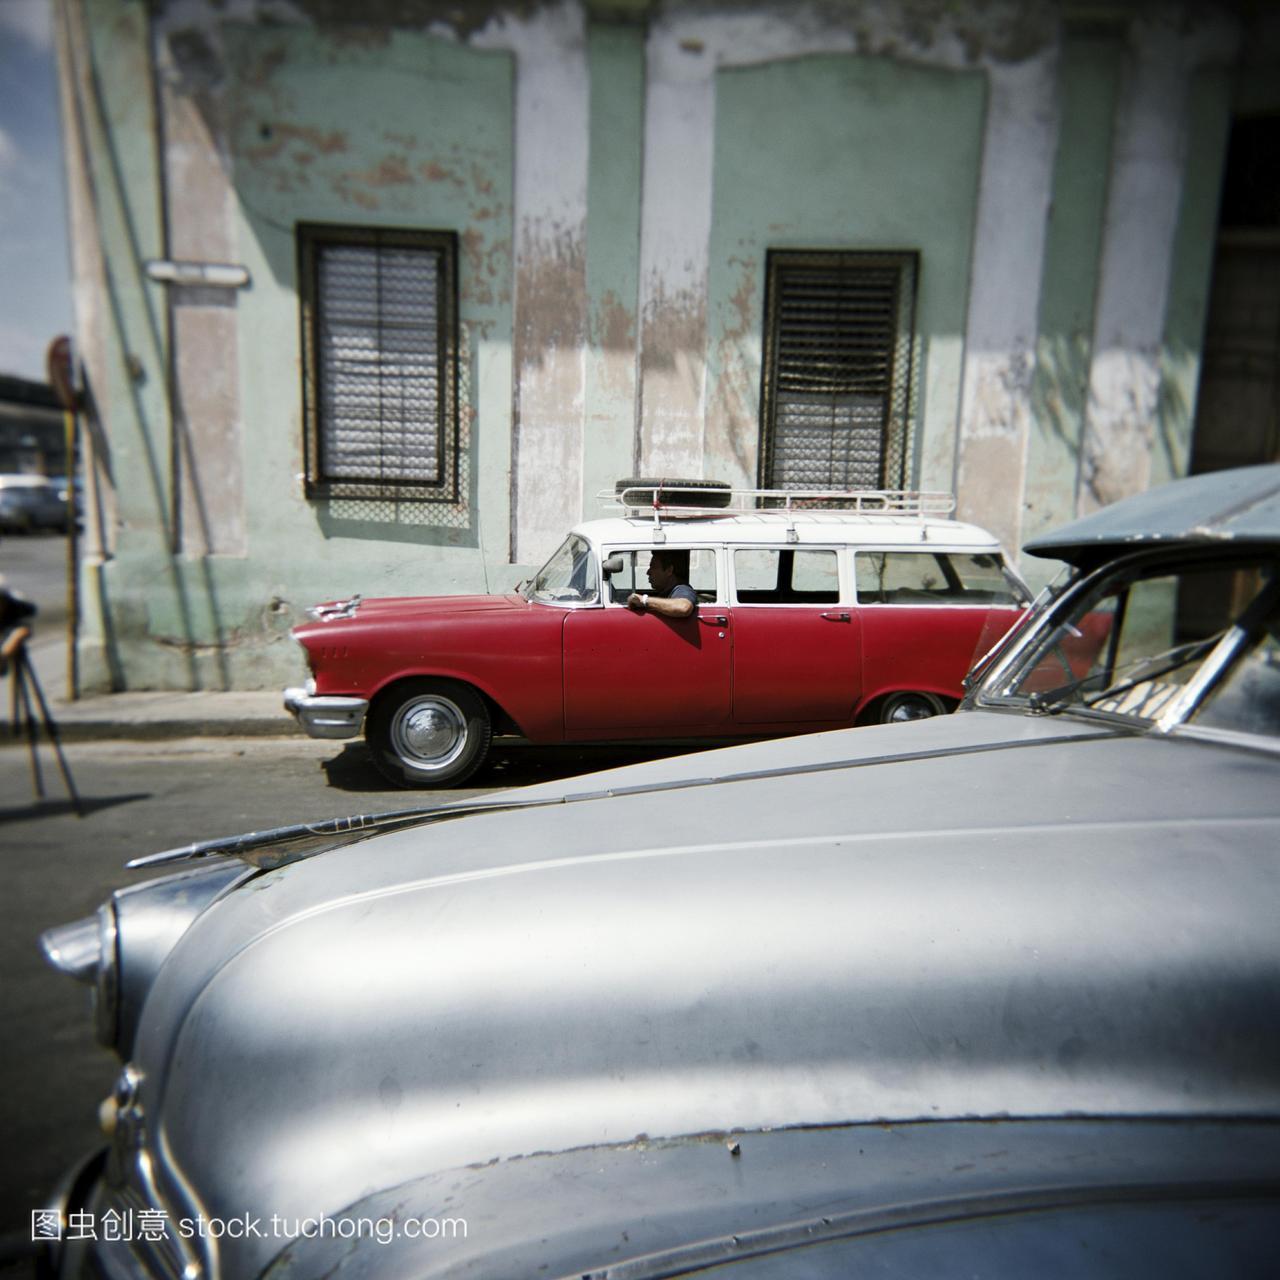 老美国汽车是私人出租,哈瓦那,古巴,西印度群岛